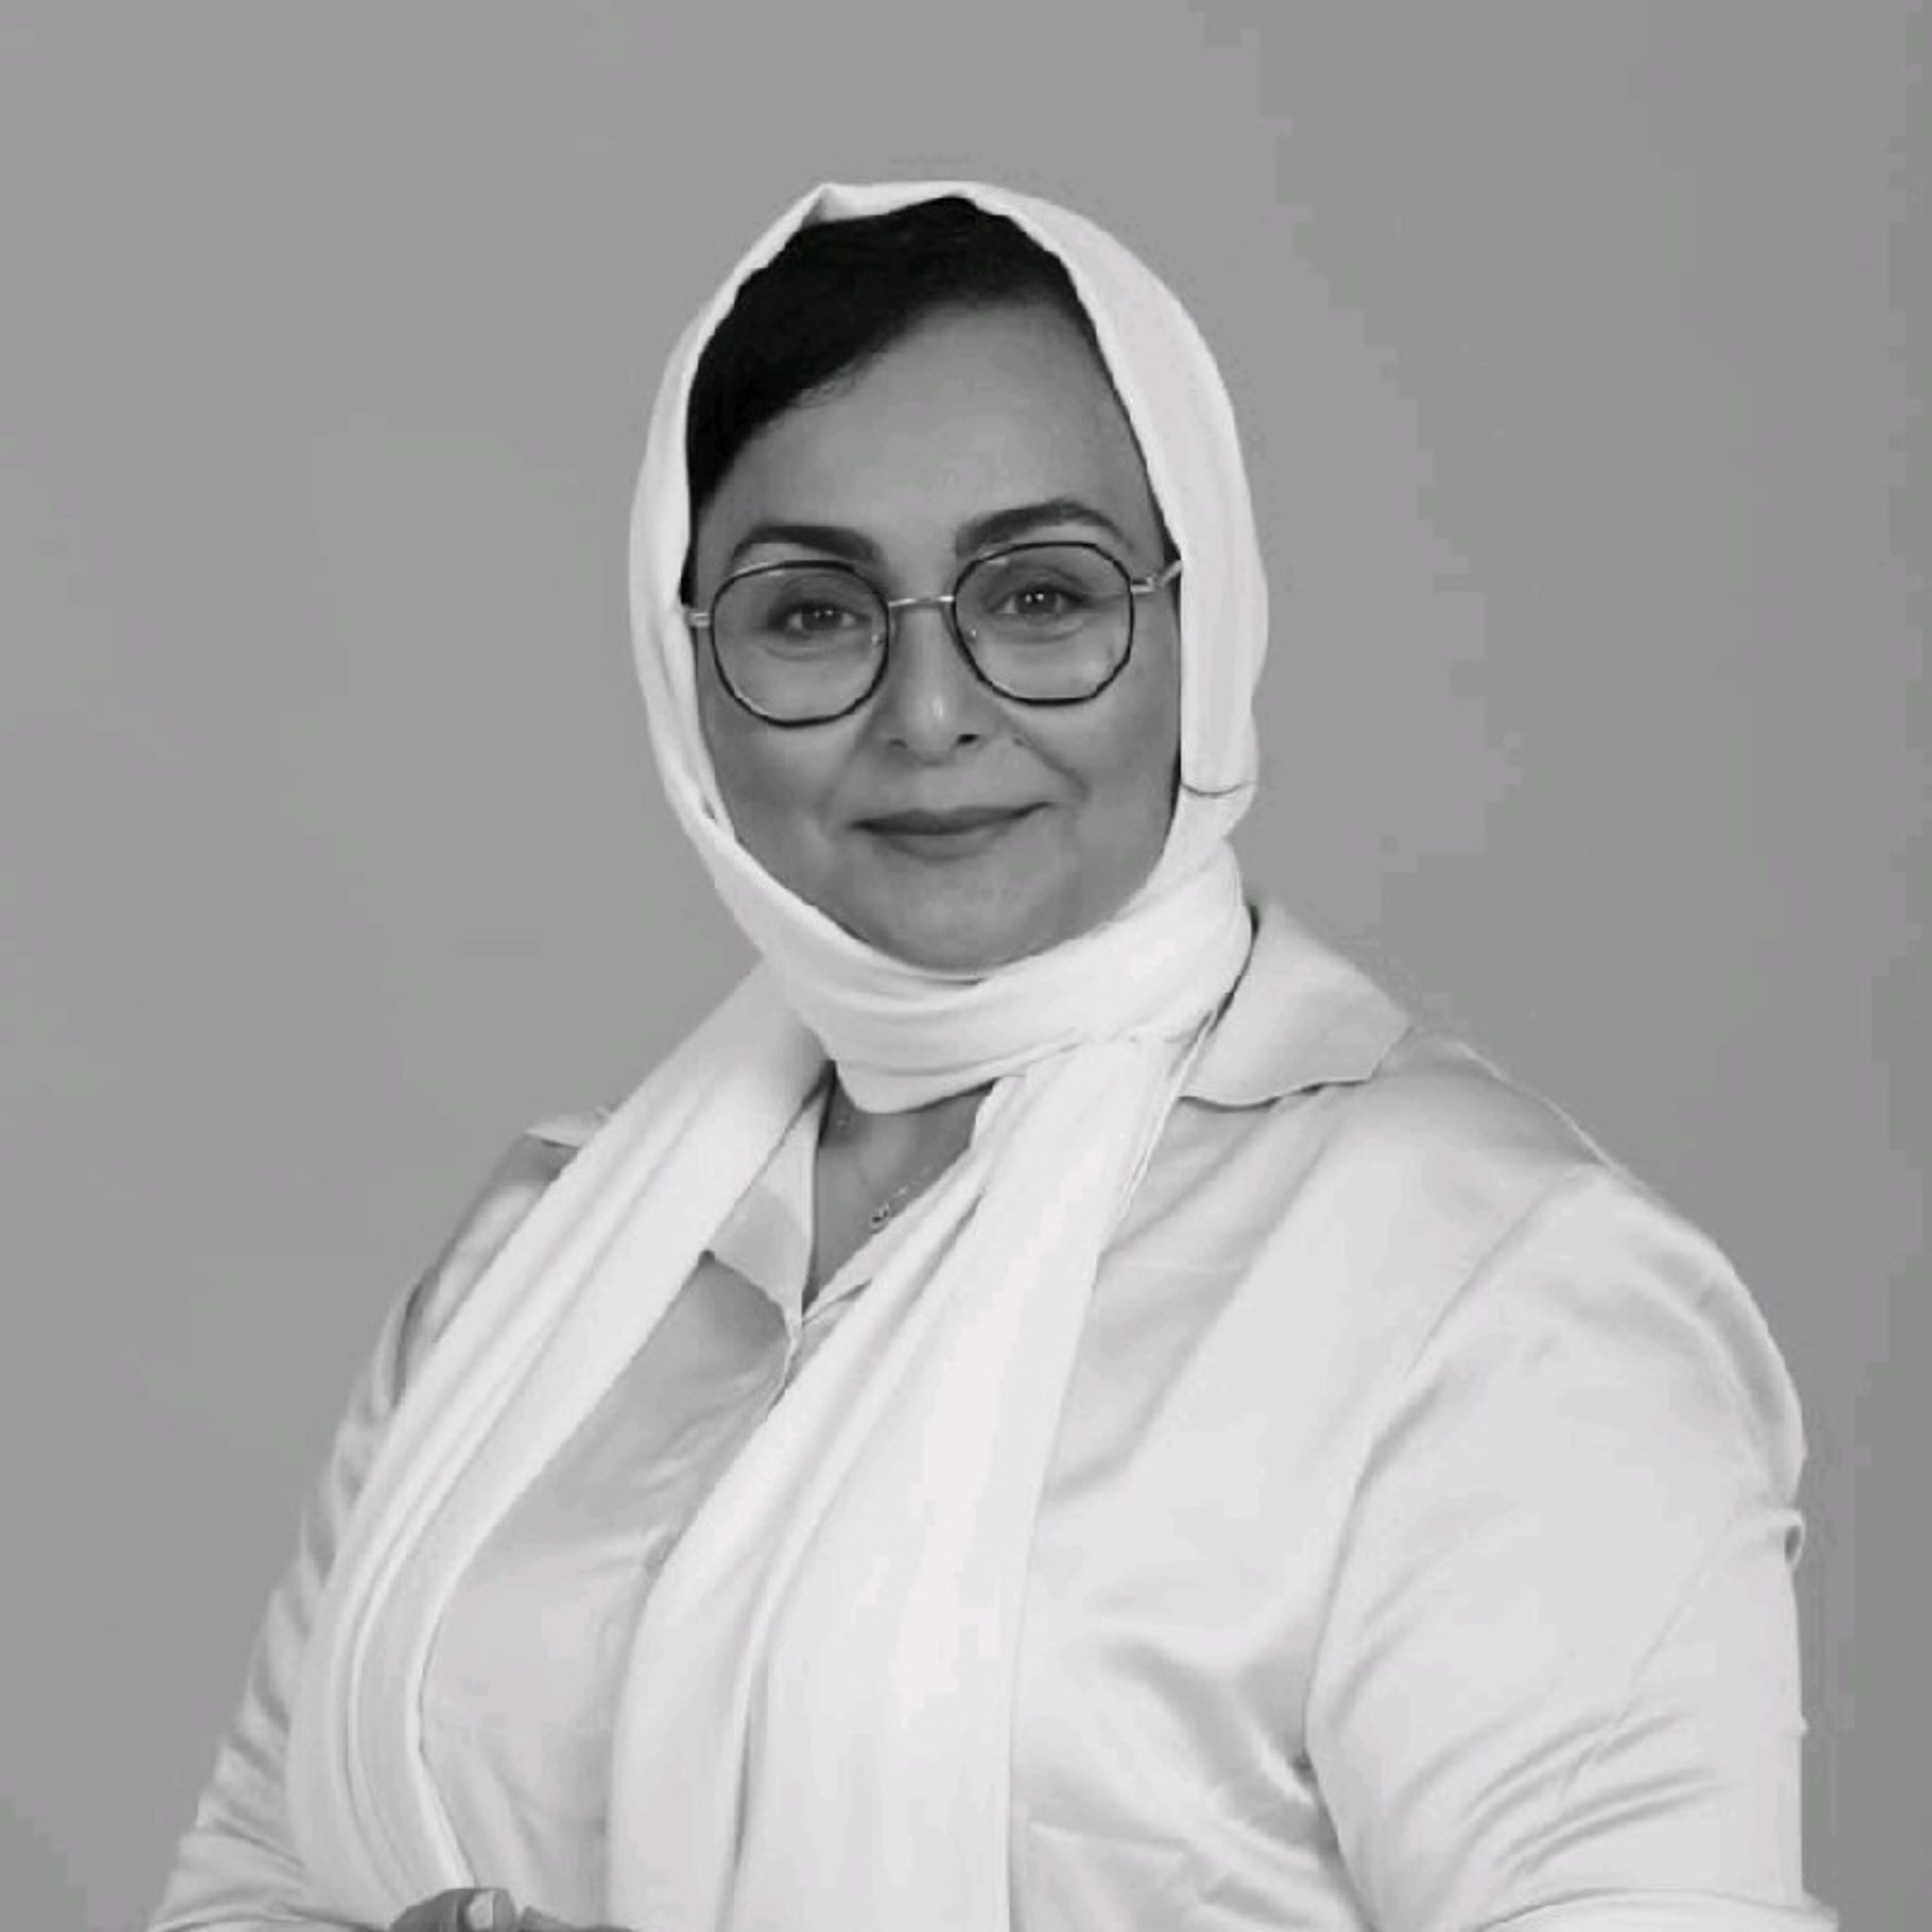 Personne posée avec des lunettes, portant un hijab blanc et un blazer blanc sur un chemisier, avec un sourire doux.